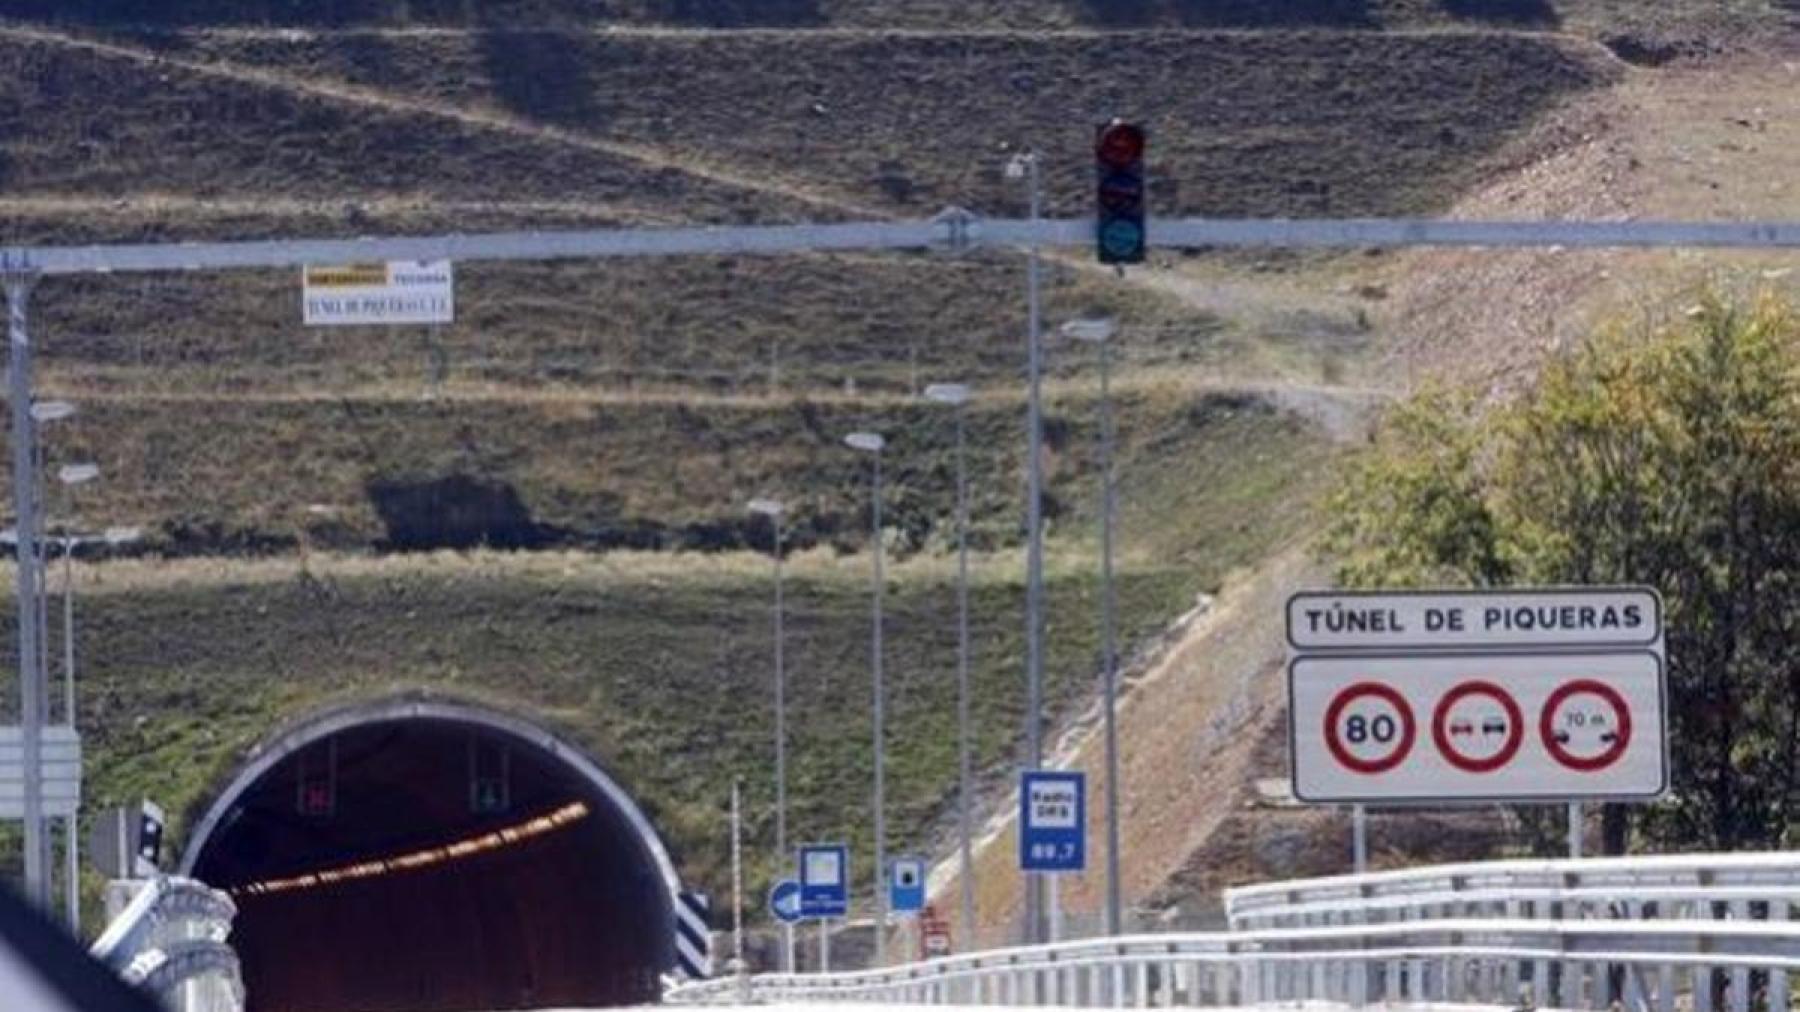 Afectaciones al tráfico por trabajos de mantenimiento en el Túnel de Piqueras en la carretera N-111